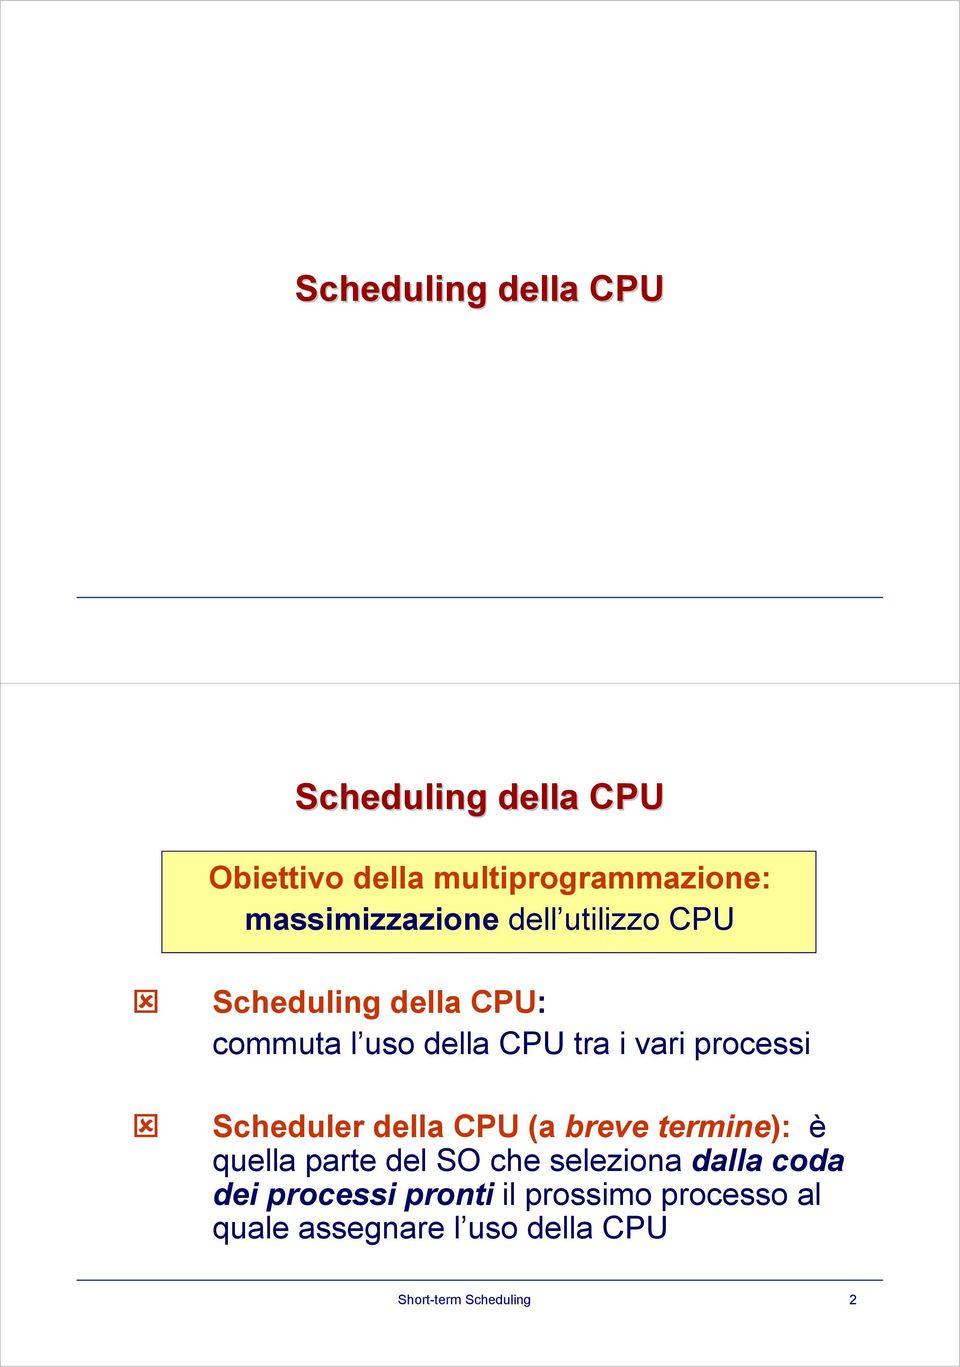 processi Scheduler della CPU (a breve termine): è quella parte del SO che seleziona dalla